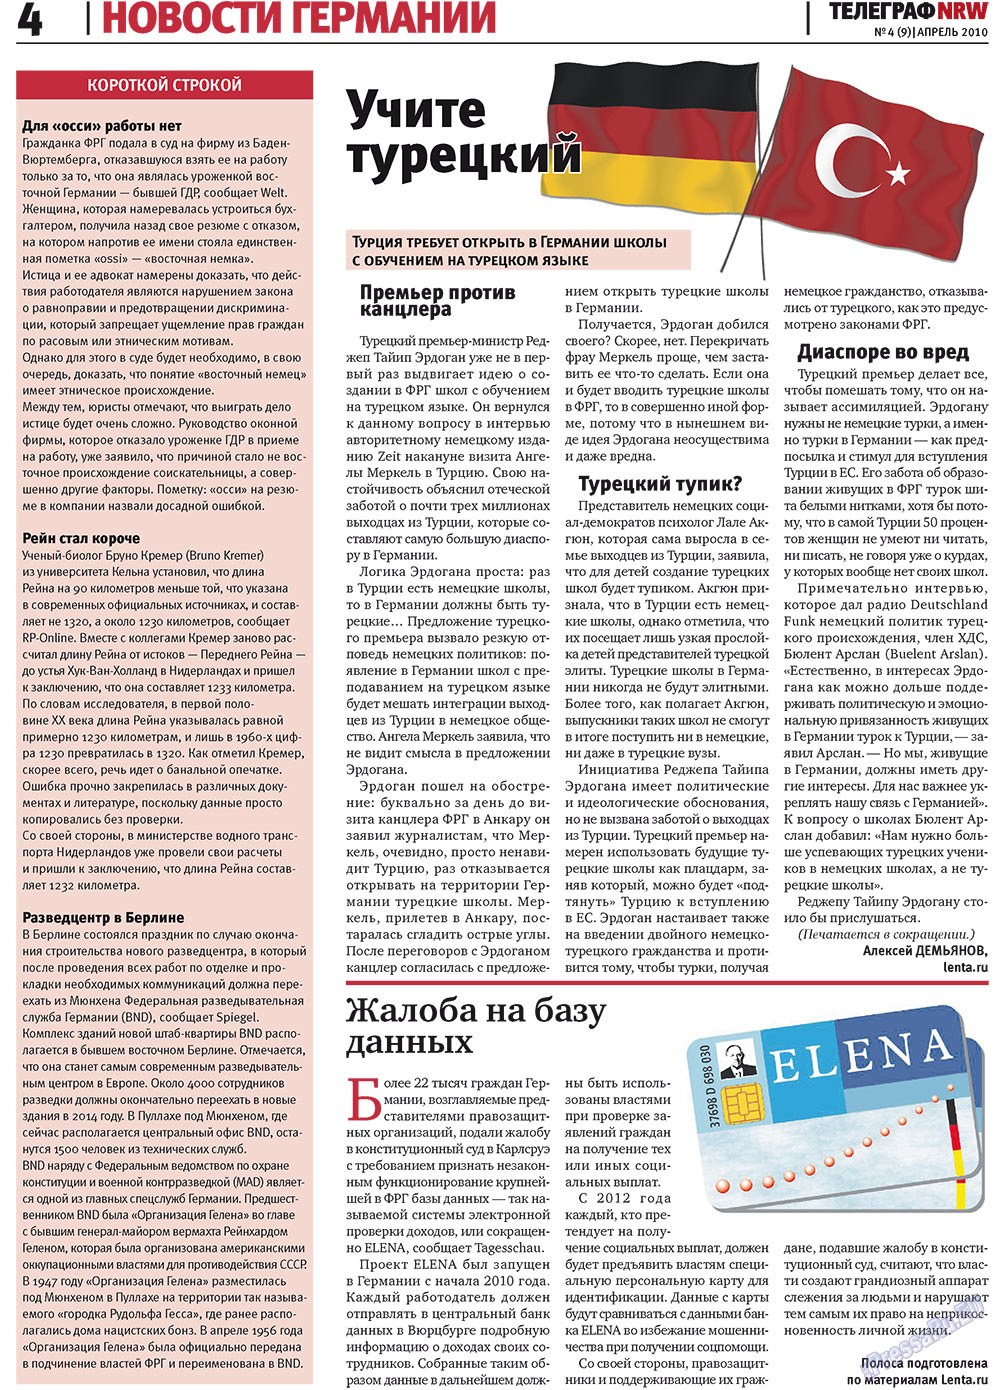 Телеграф NRW (газета). 2010 год, номер 4, стр. 4